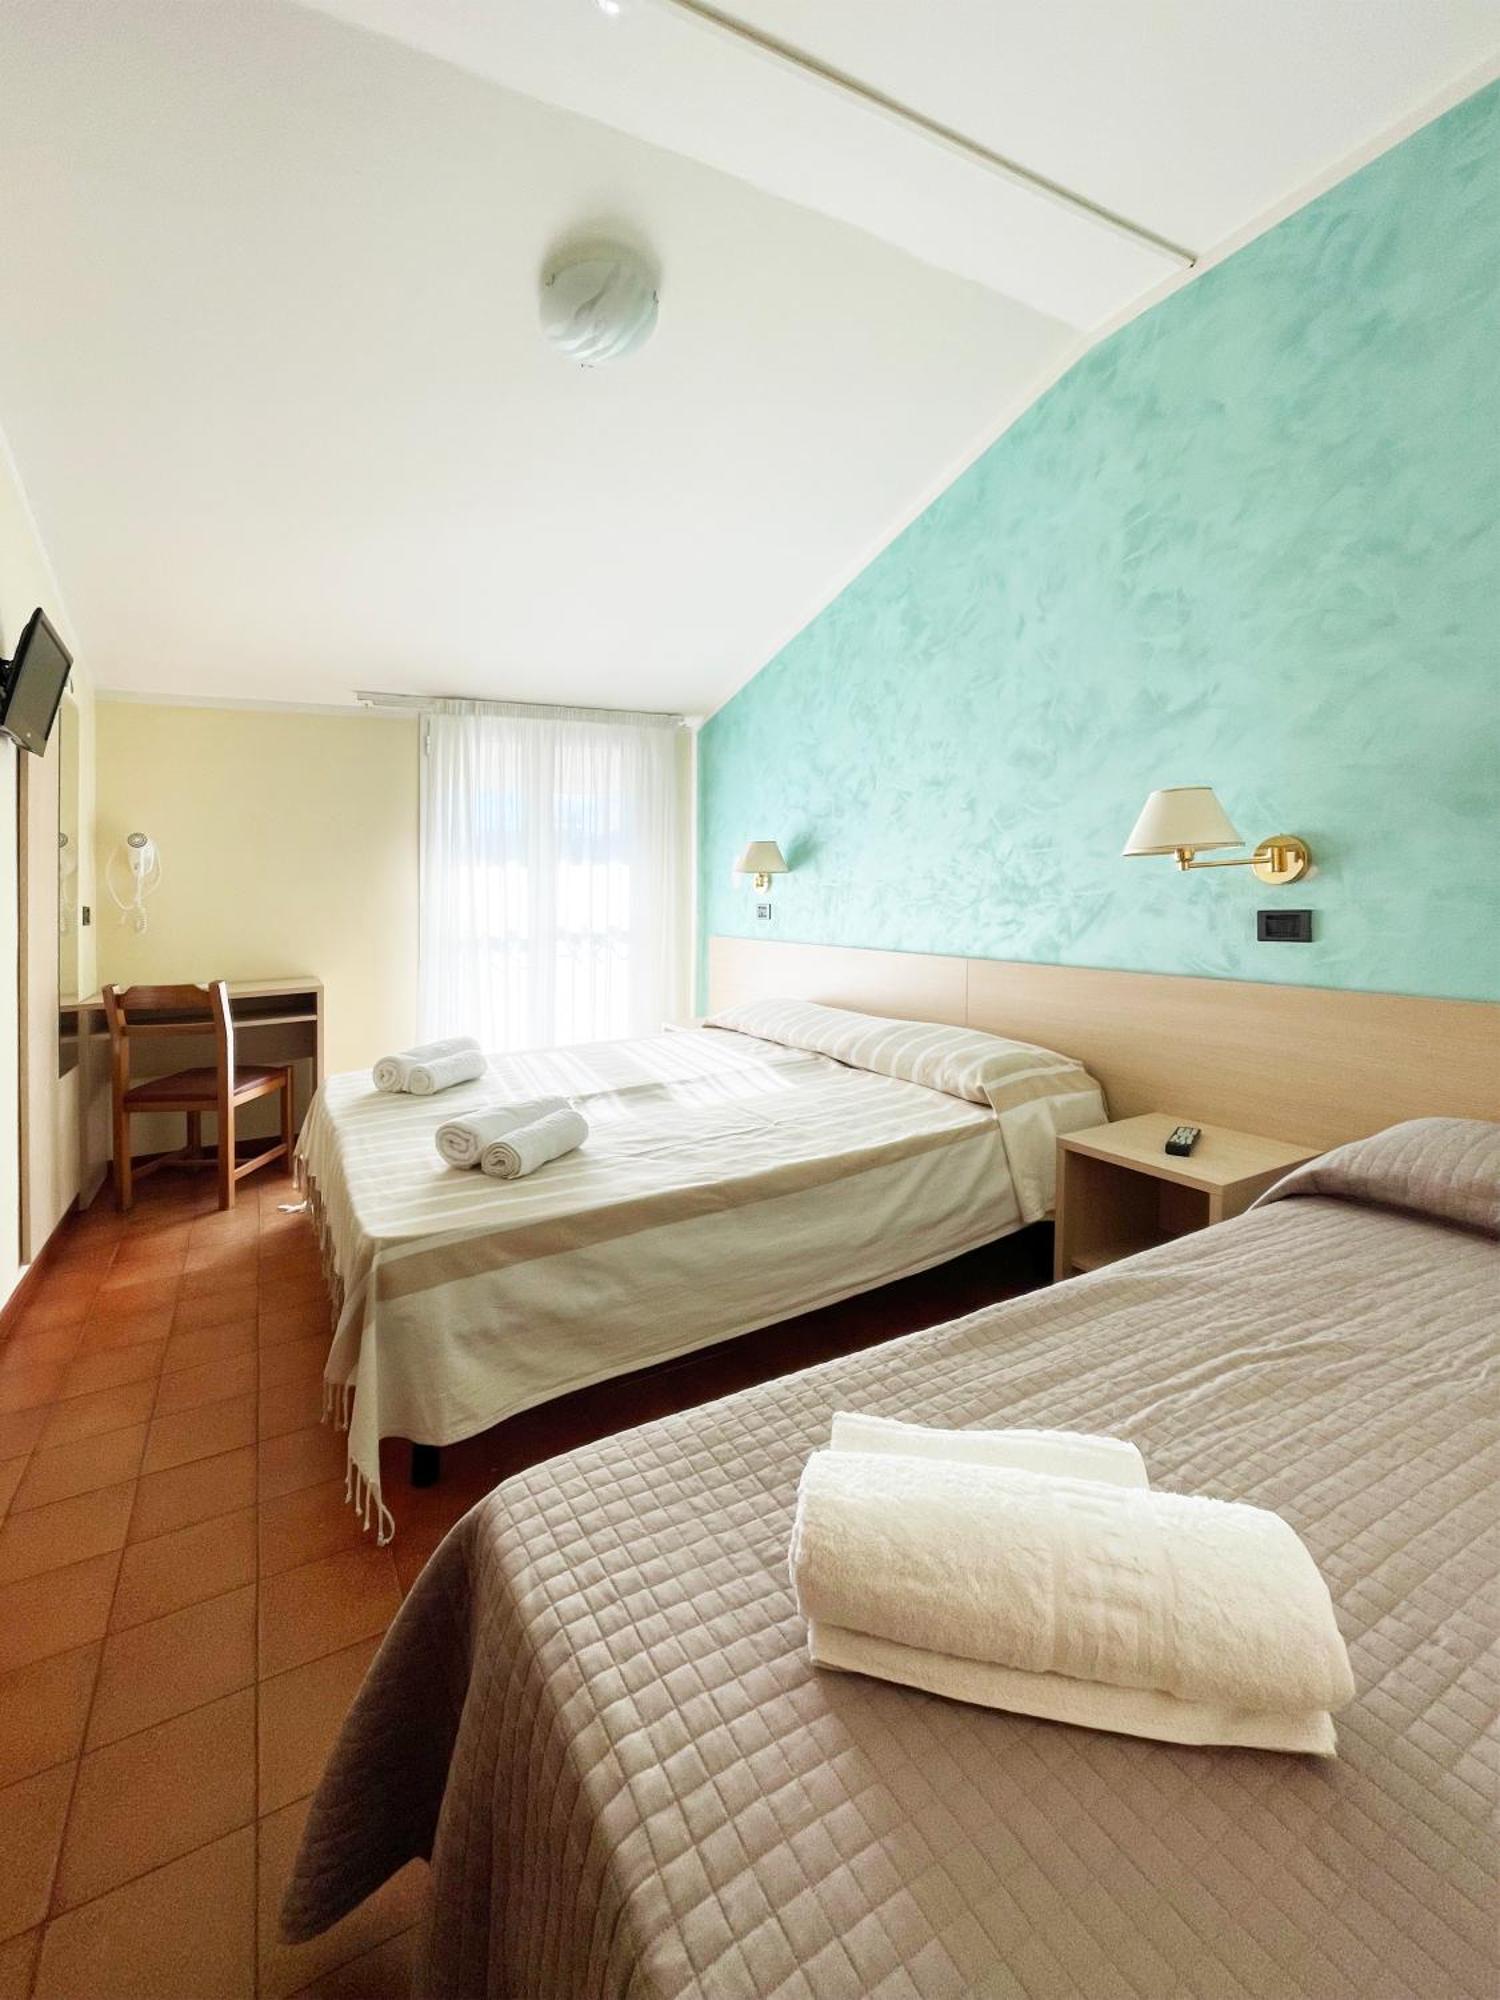 Hotel Reale Rimini Esterno foto